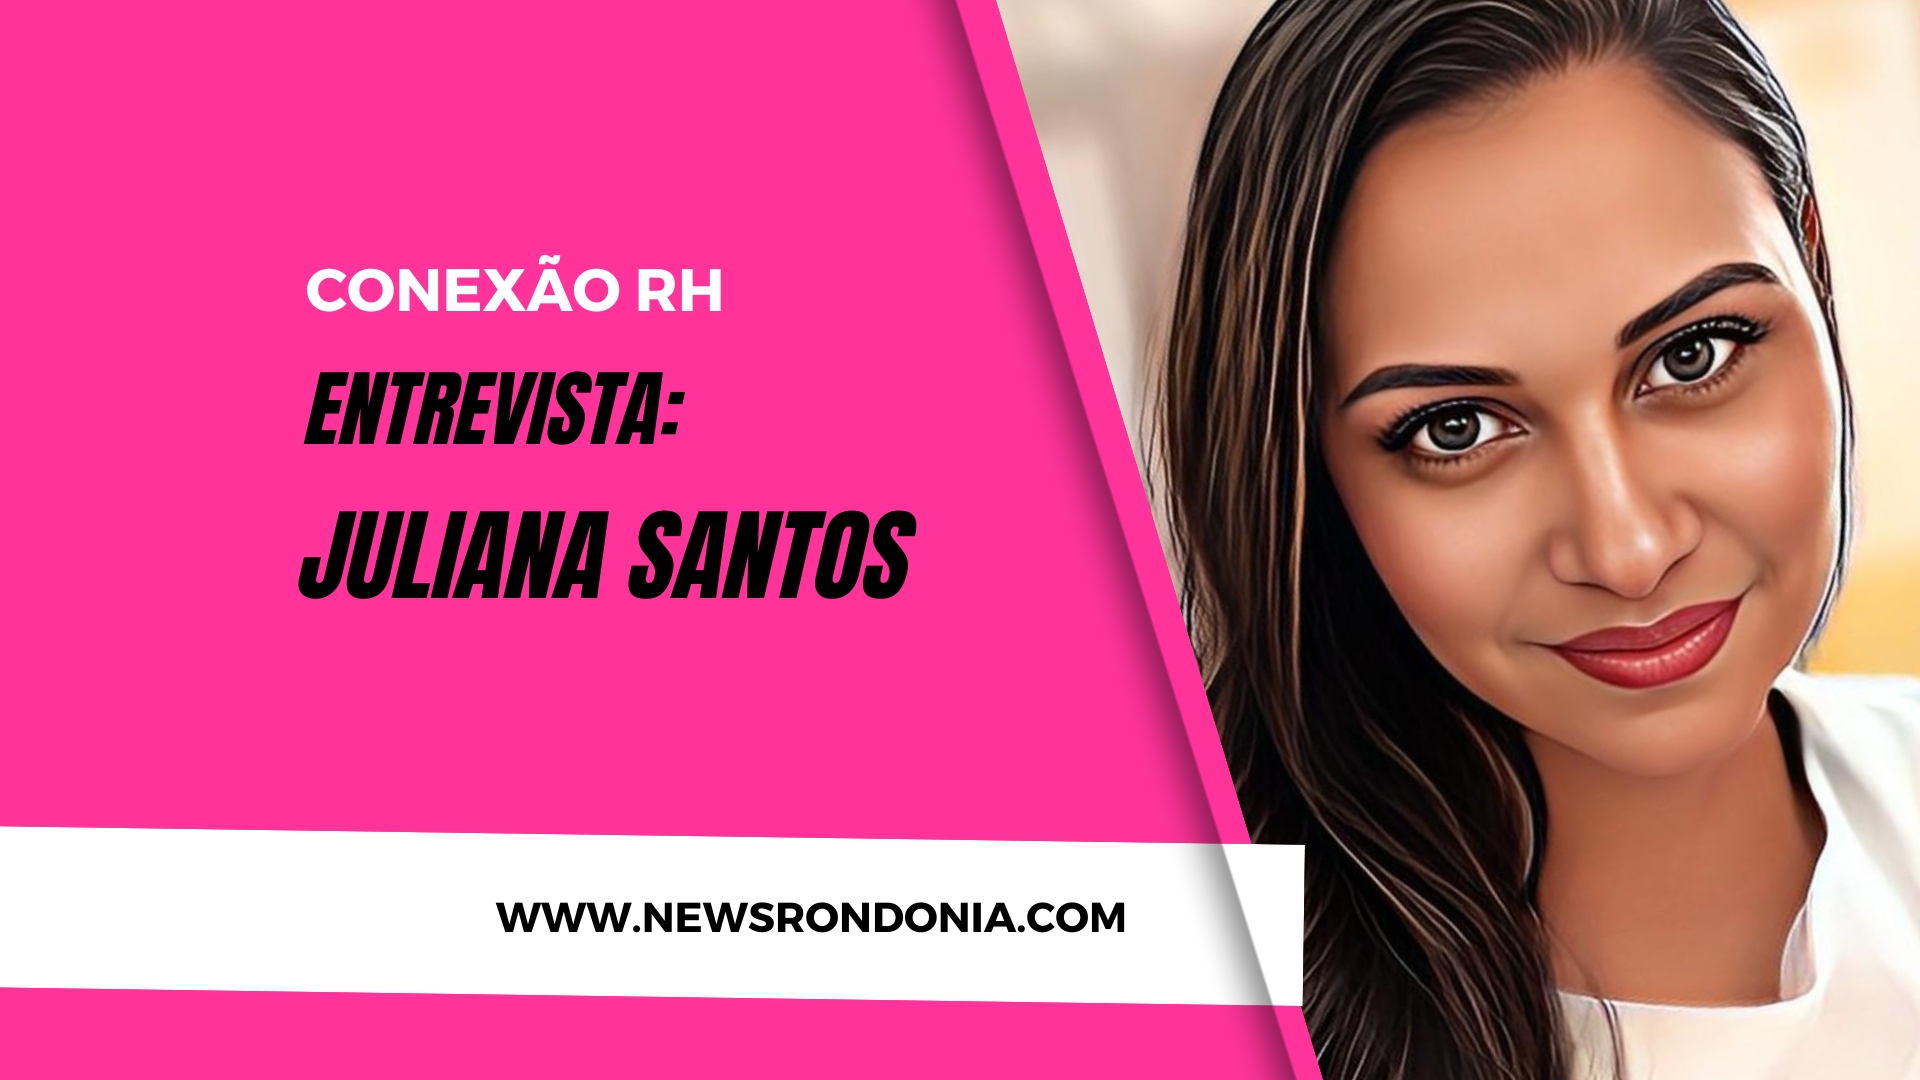 Conexão RH entrevista: Juliana Santos - News Rondônia